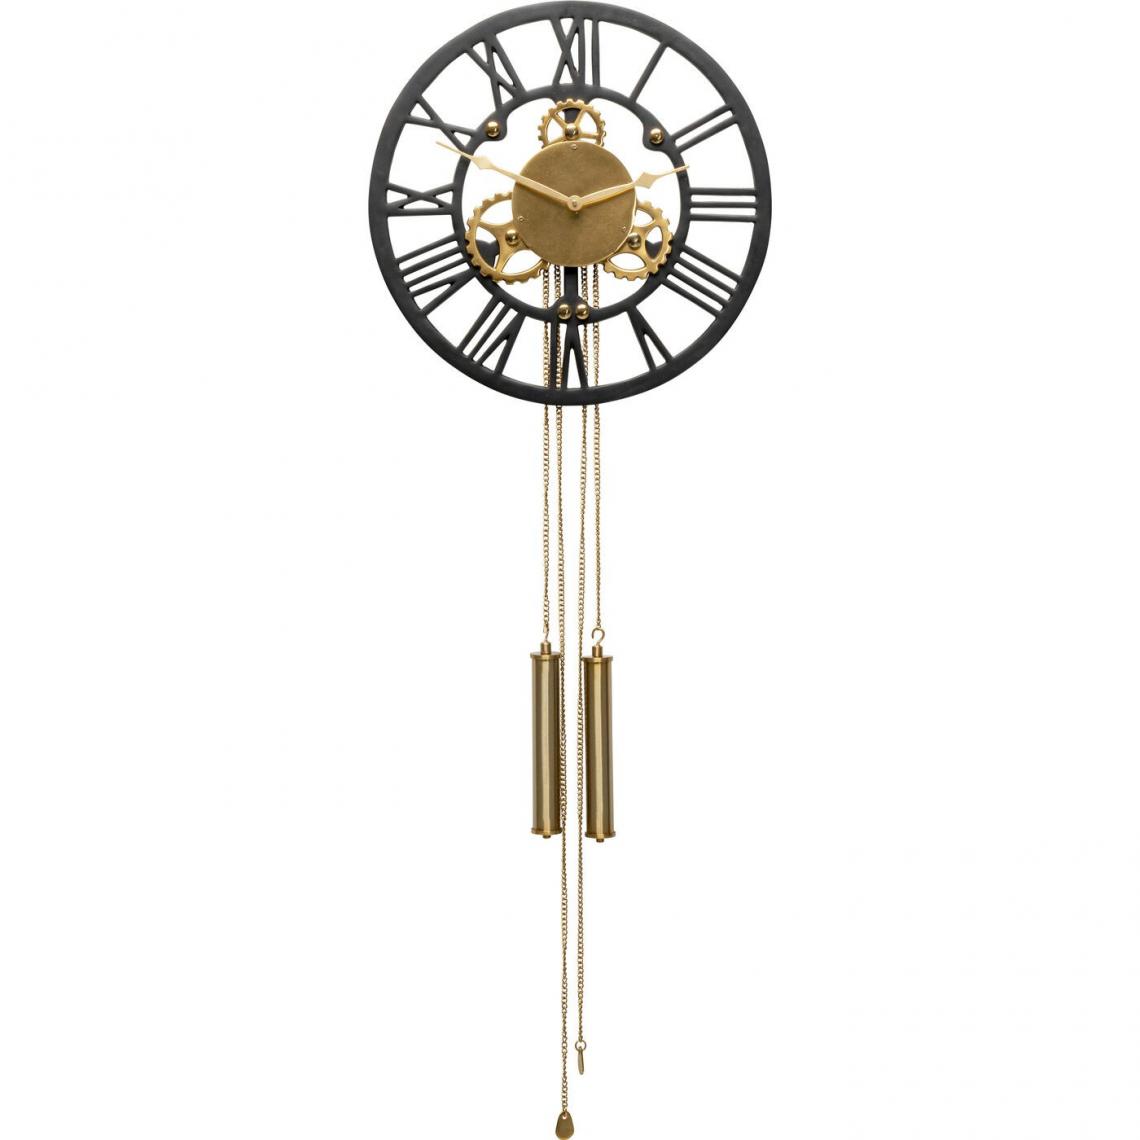 Karedesign - Horloge murale Clockwork 126x46cm Kare Design - Radio